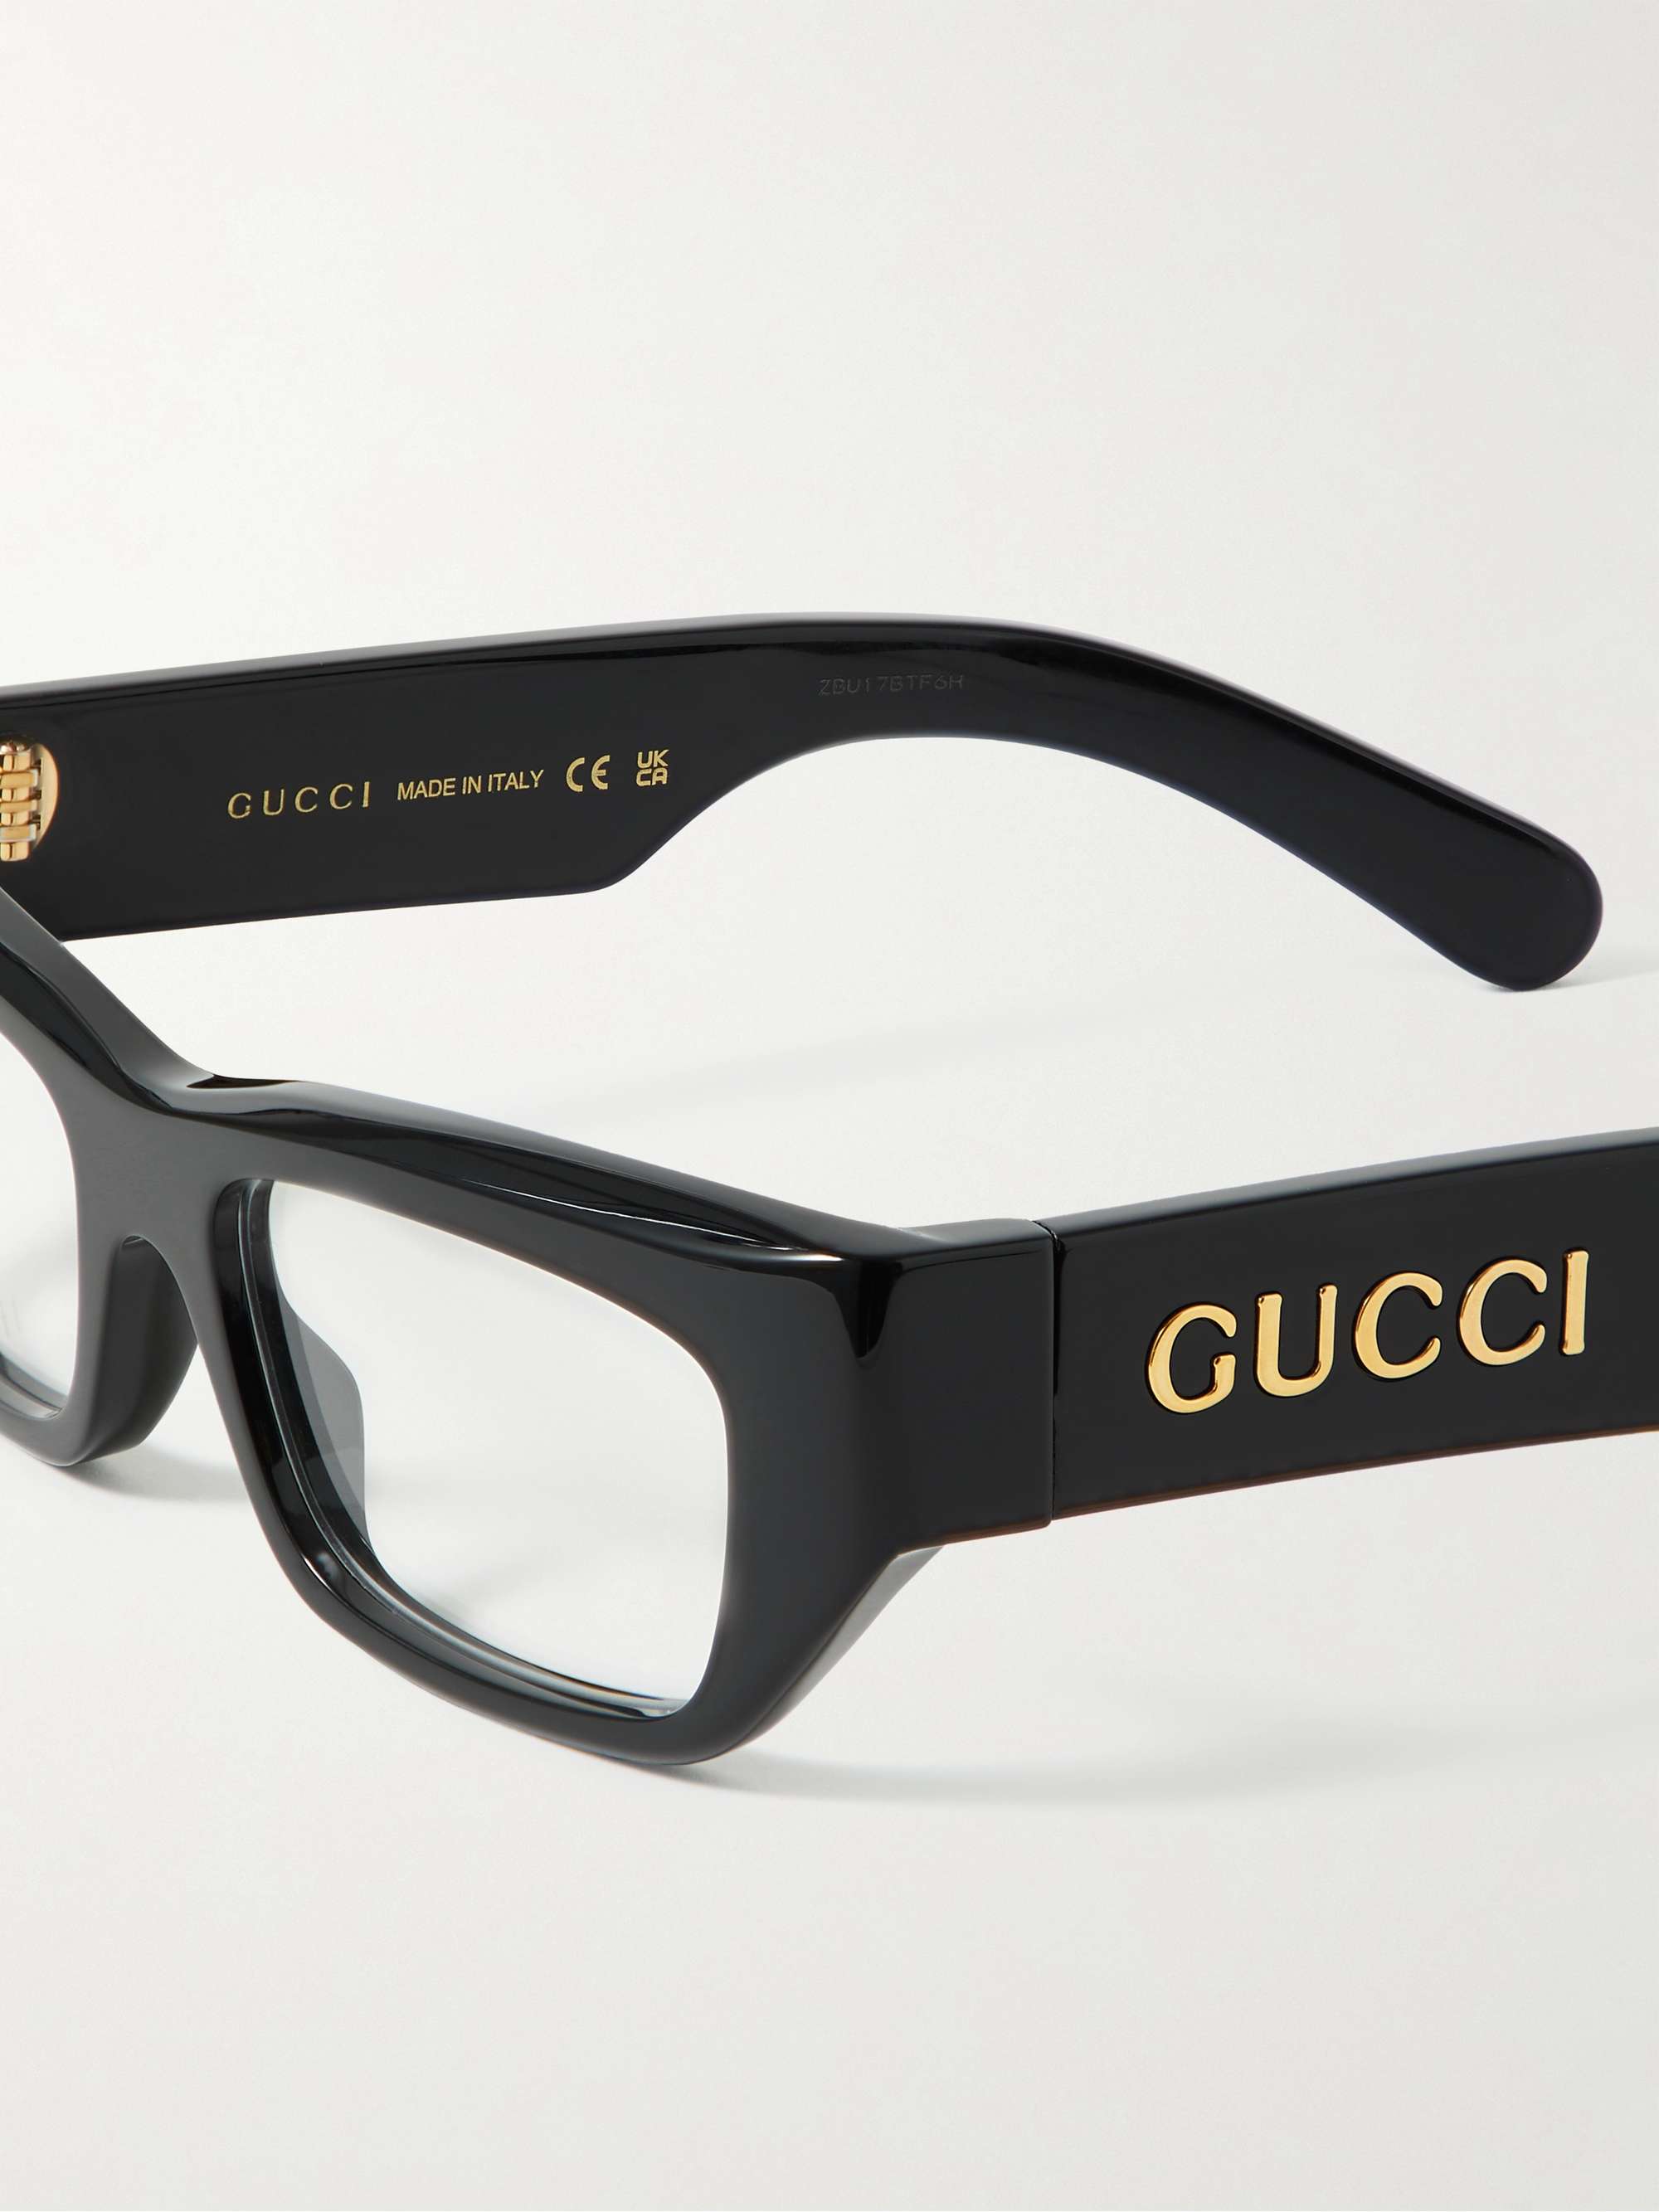 GUCCI EYEWEAR Rectangular-Frame Acetate Optical Glasses